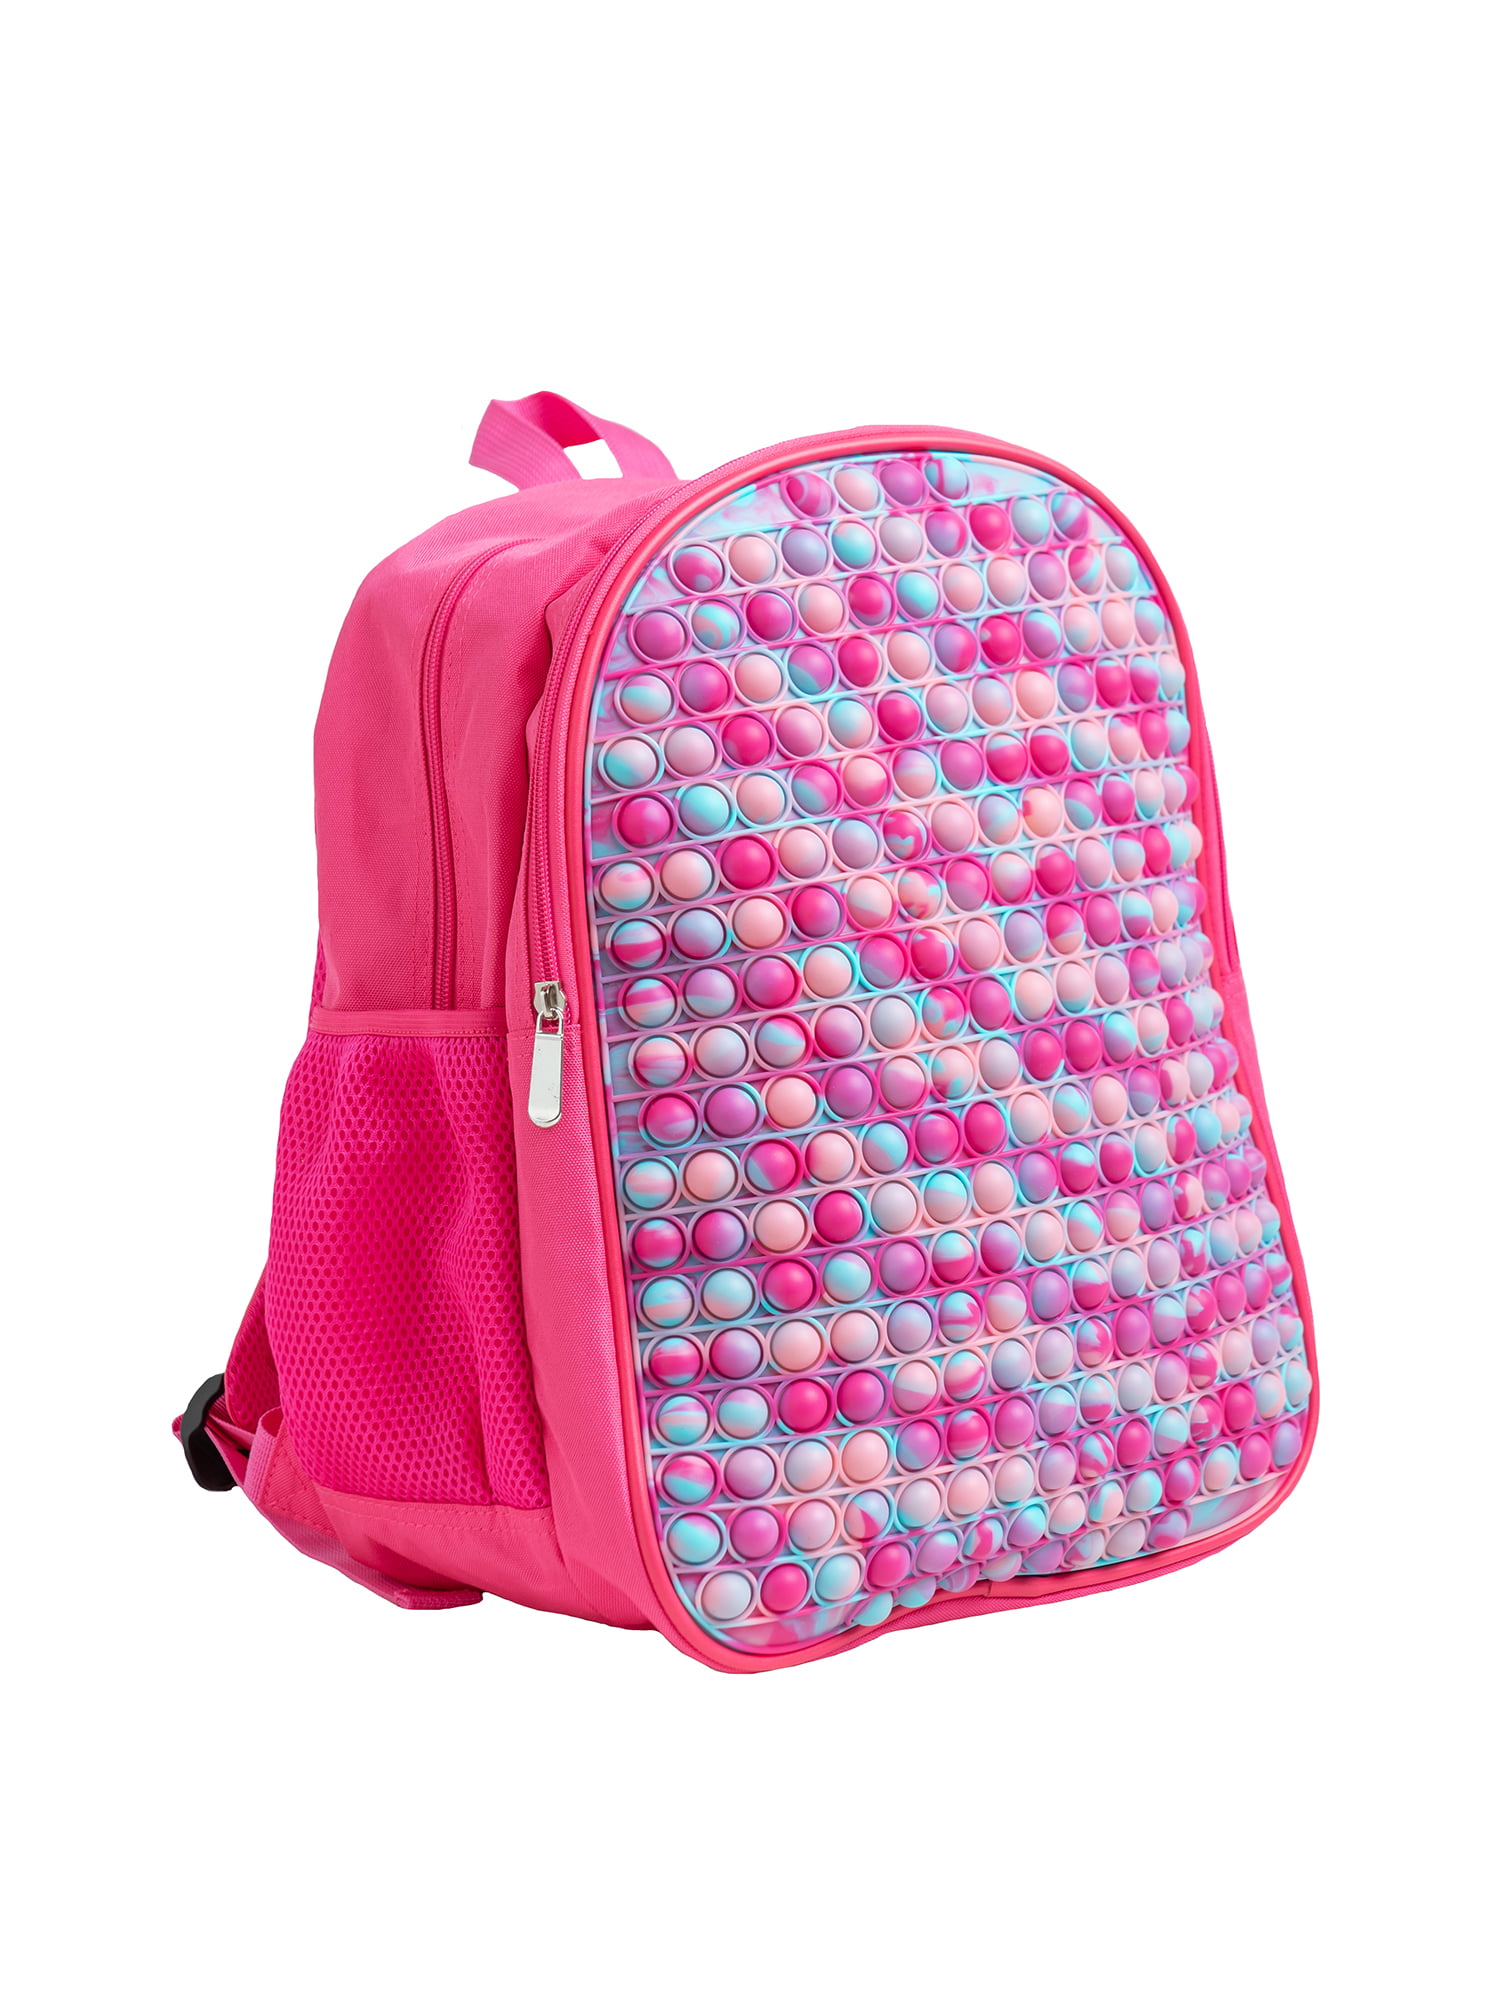 Stuff Jam CLN 8090 Multicolor Printed School Bag-Teenagers Backpack -  Backpack 